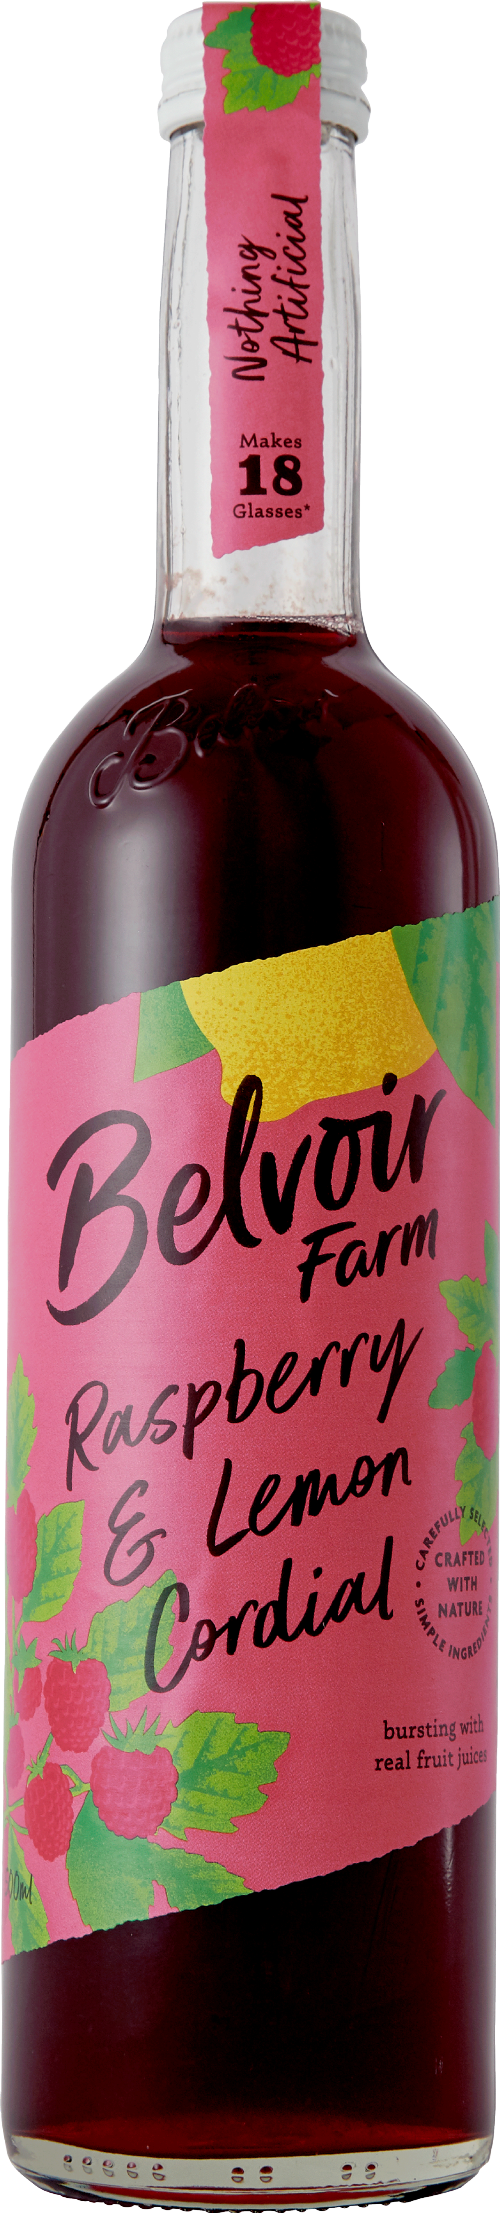 BELVOIR Raspberry & Lemon Cordial 50cl